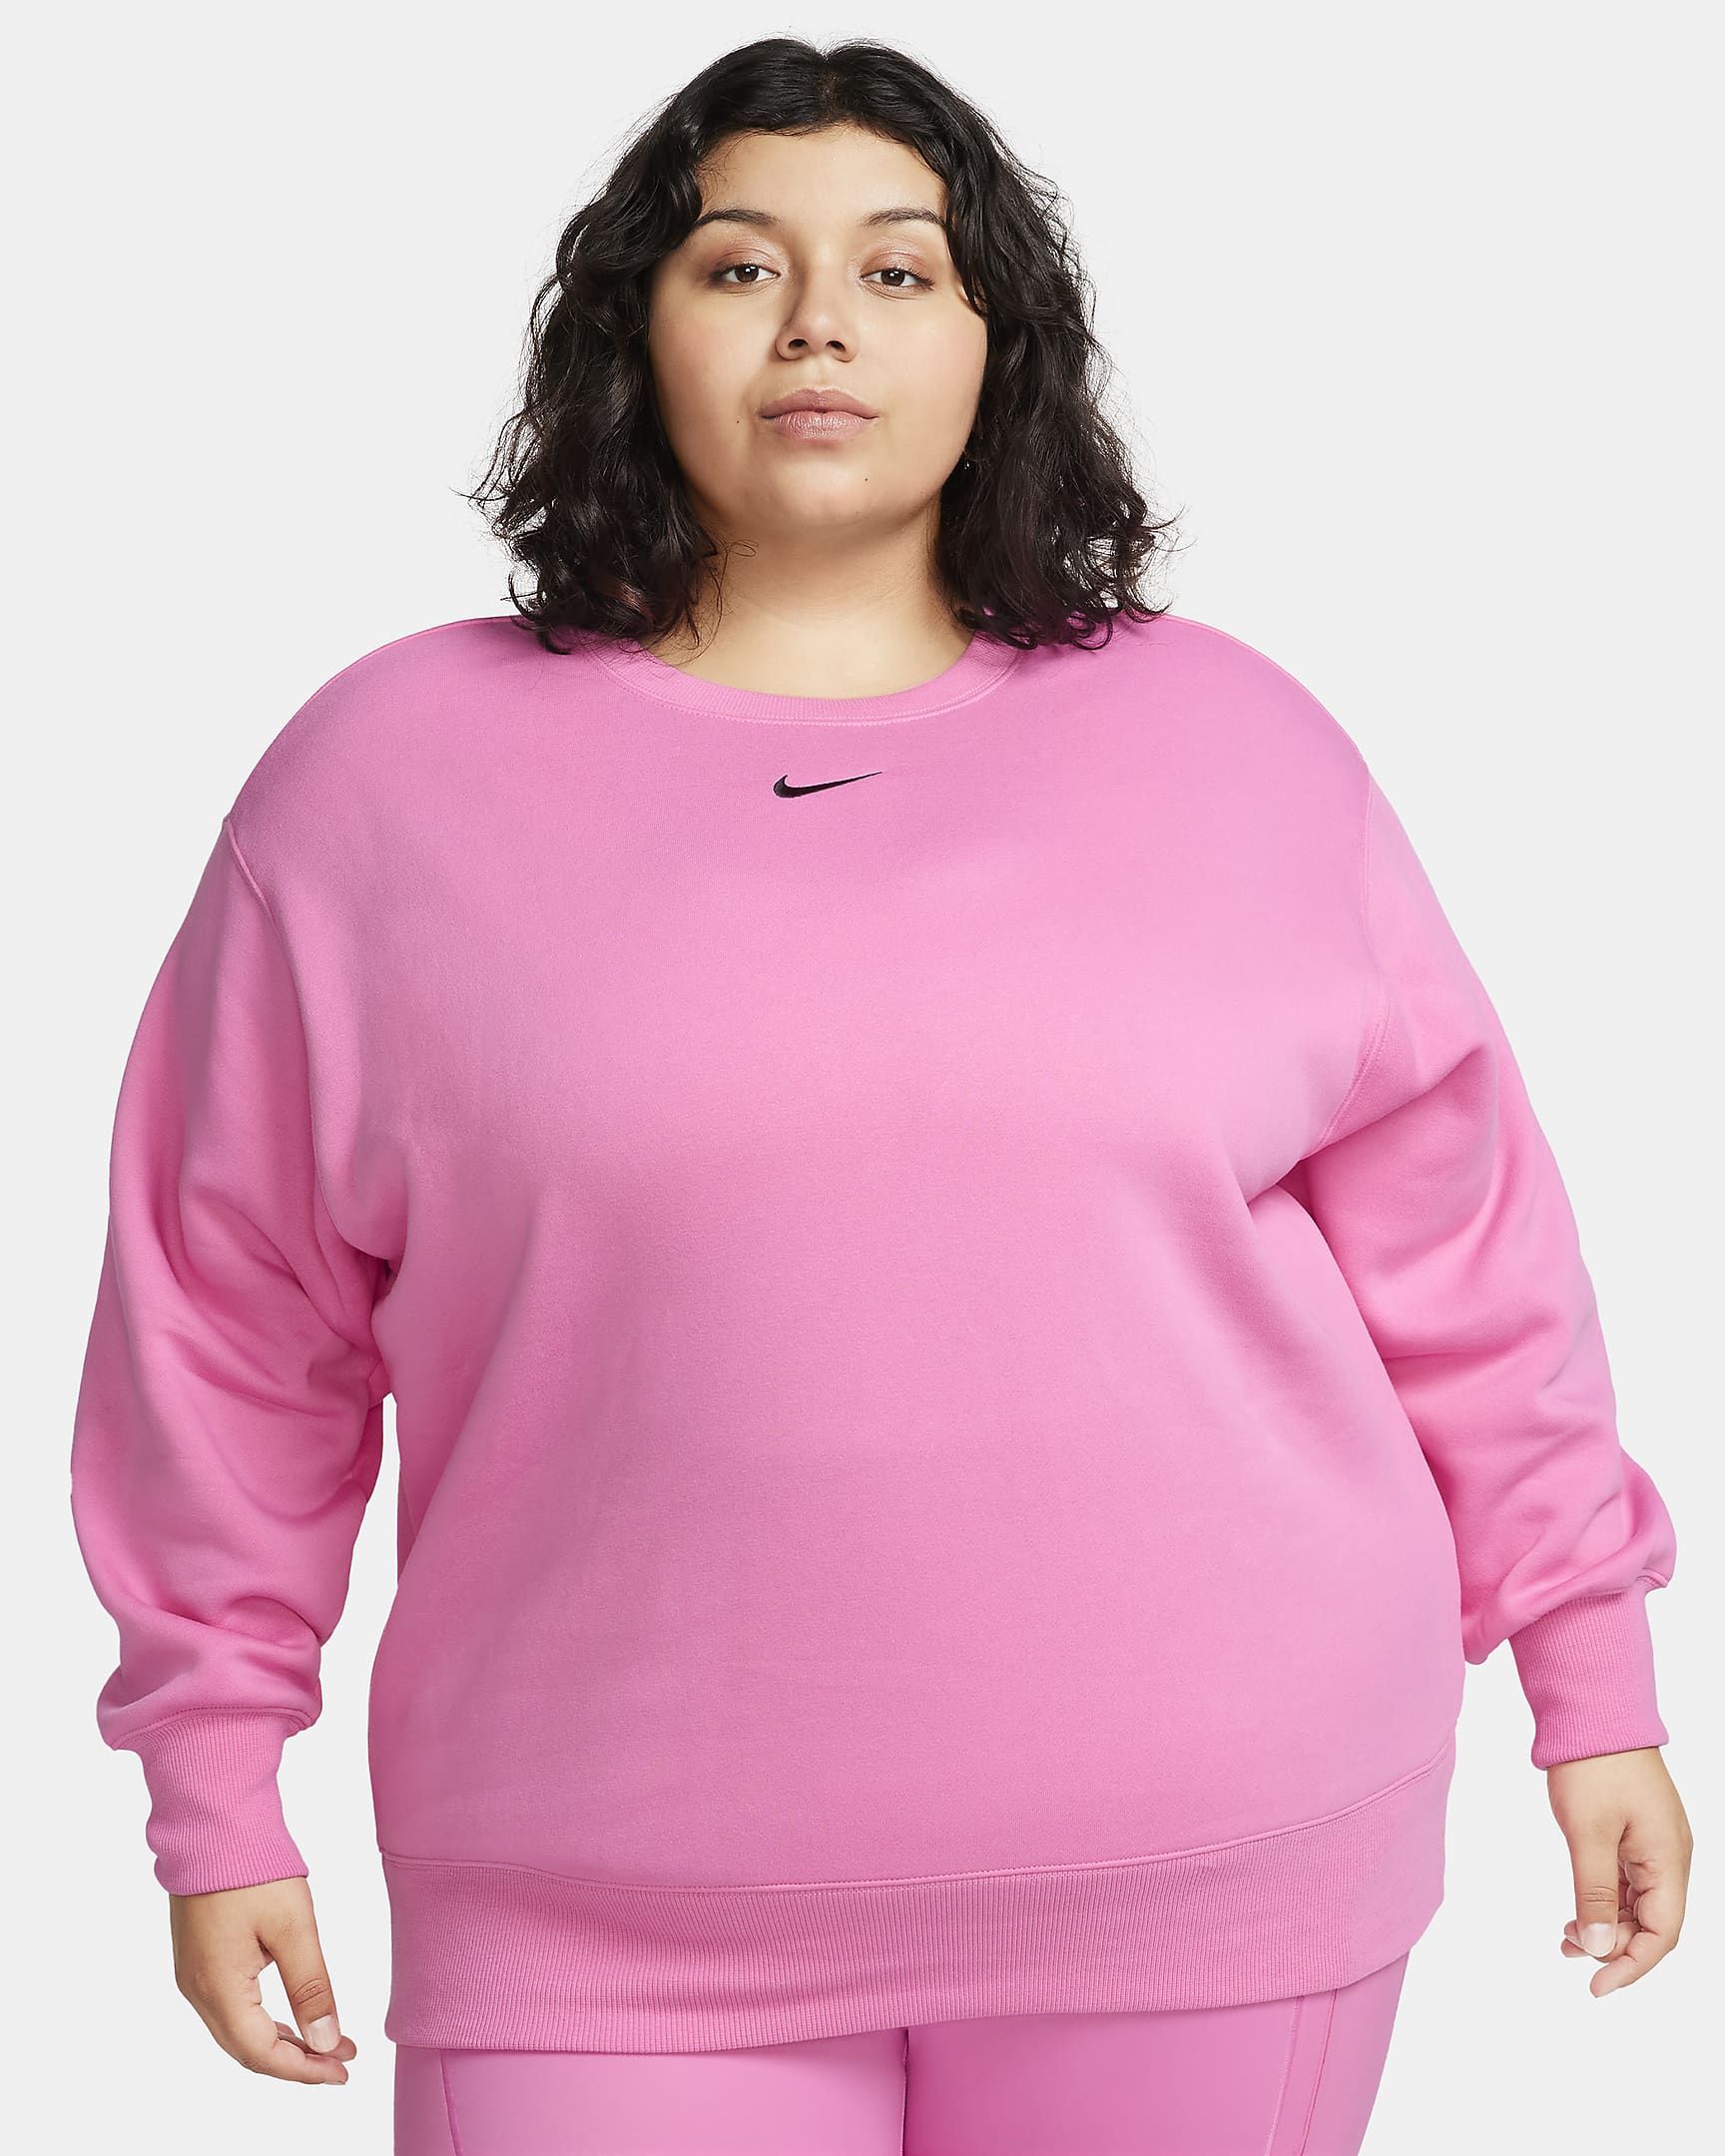 Nike Sportswear Phoenix Fleece Women's Oversized Crew-Neck Sweatshirt (Plus Size). Nike.com | Nike (US)